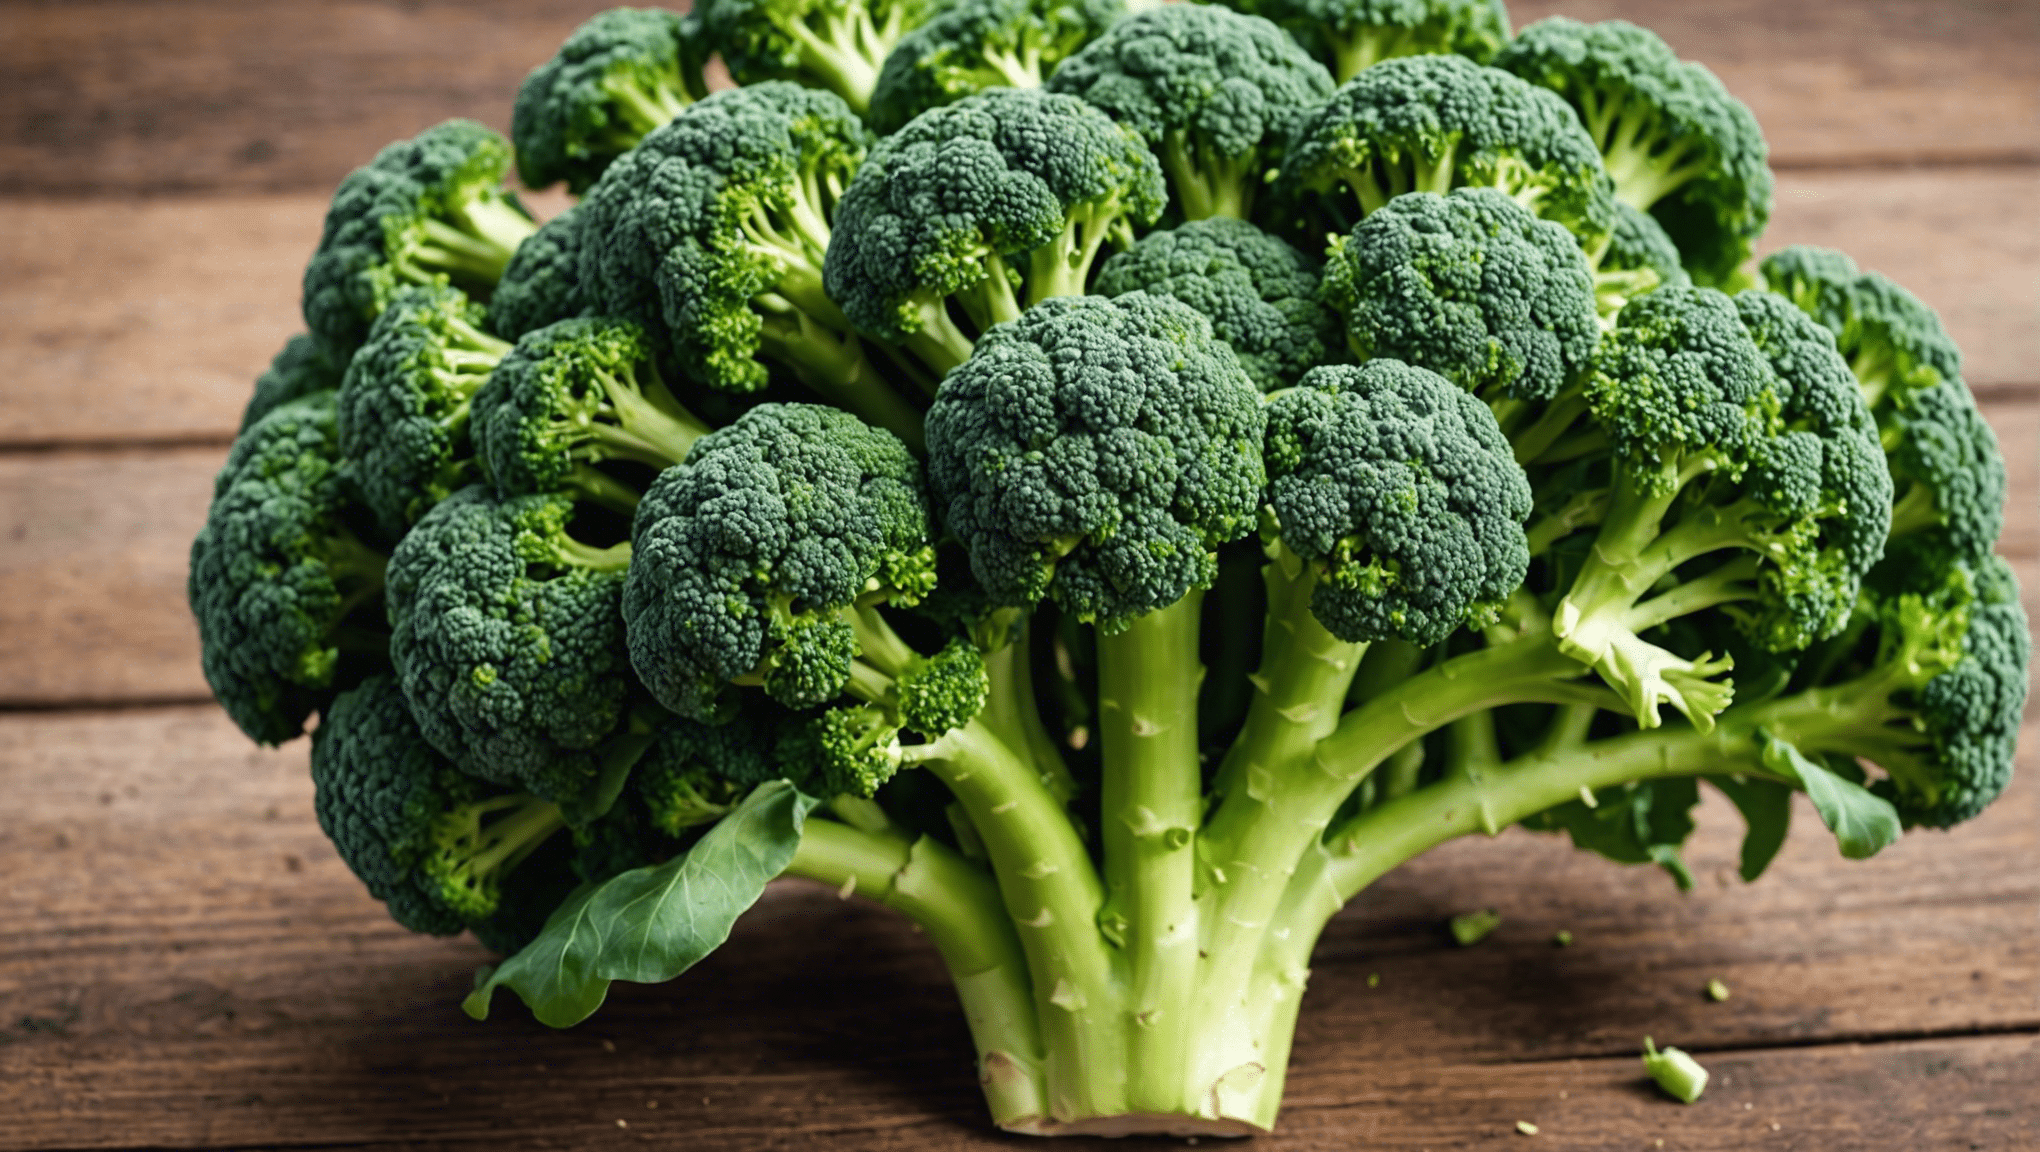 scopri le ragioni della popolarità dei semi di broccoli nelle tendenze sanitarie e i loro potenziali benefici per la salute.